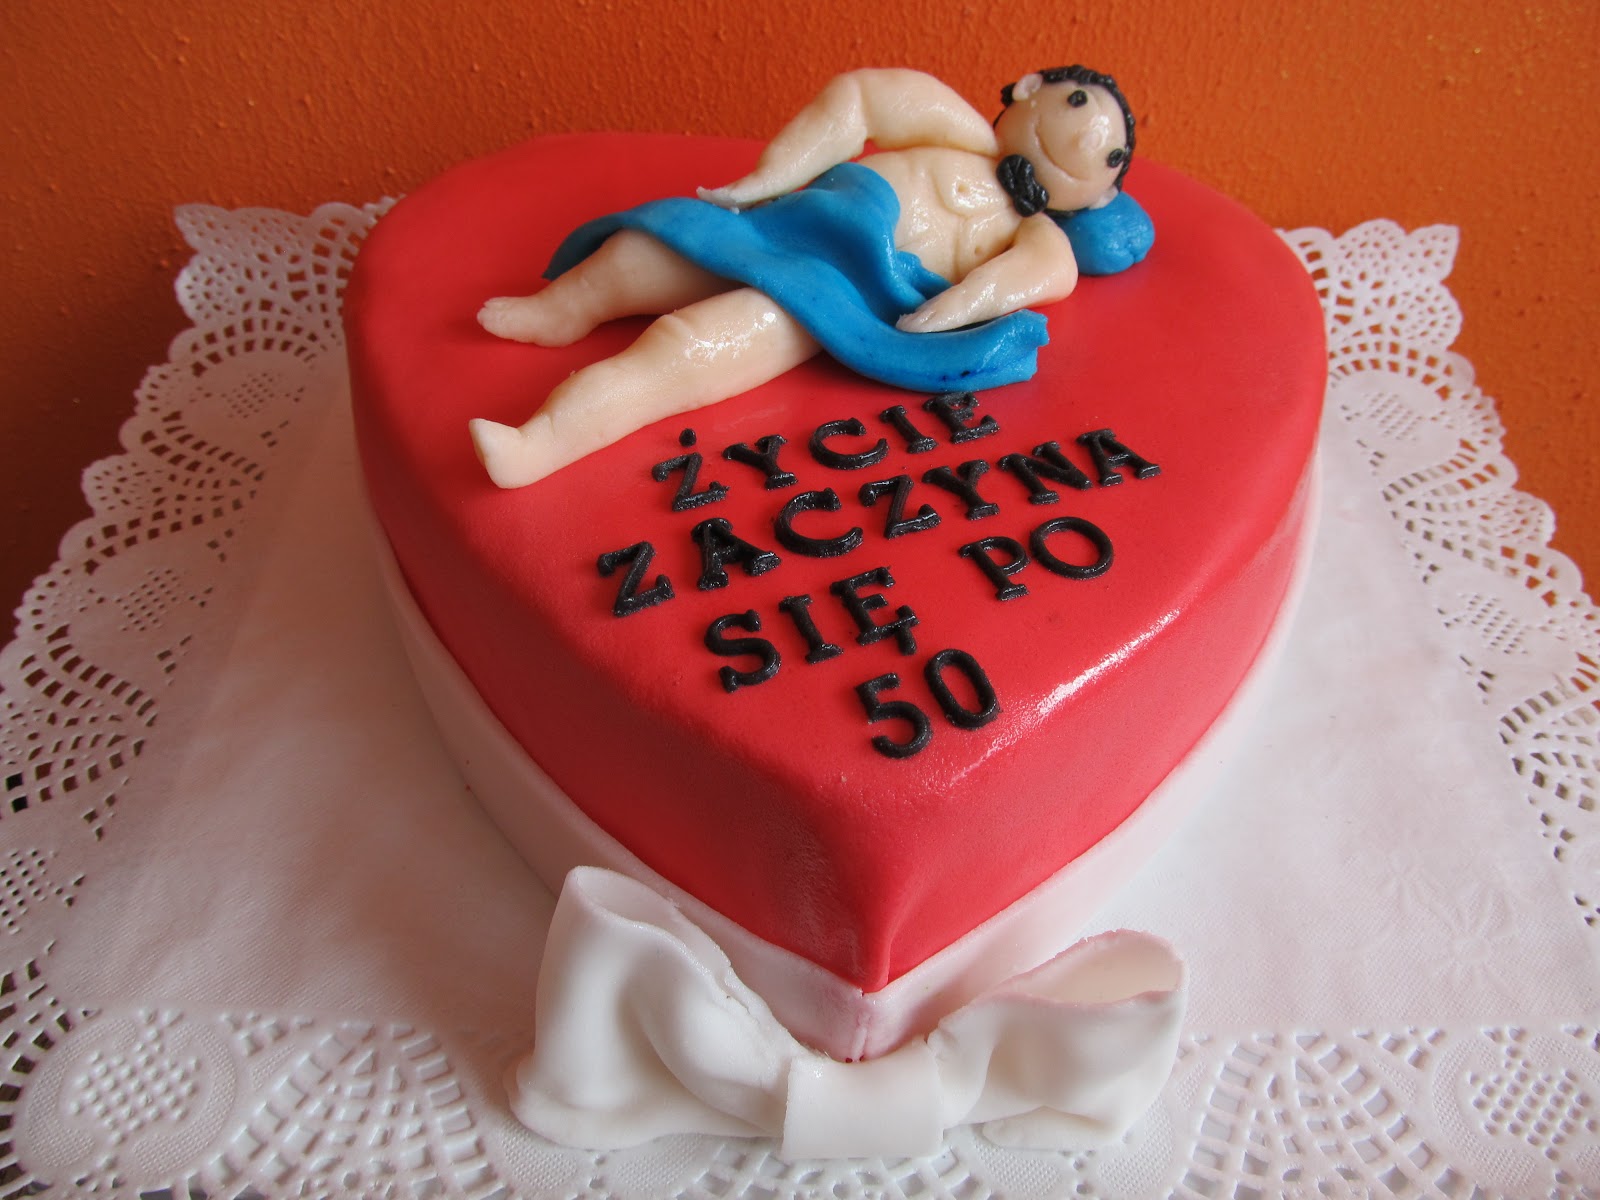 tort na 50 urodziny smieszny